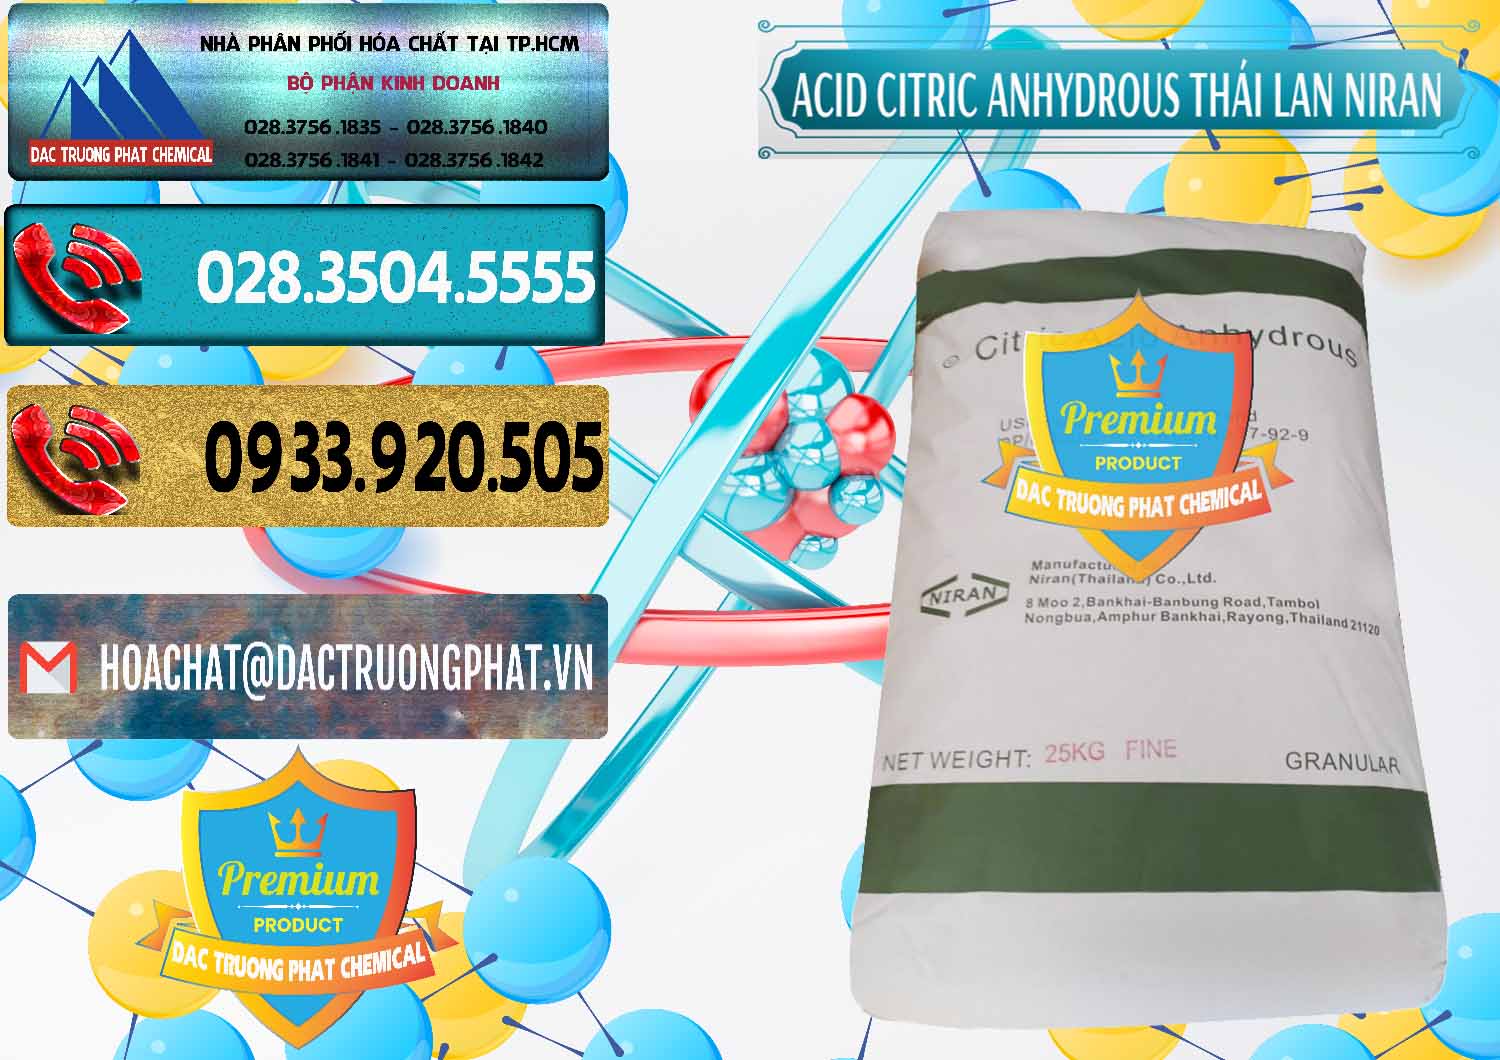 Công ty kinh doanh và bán Acid Citric - Axit Citric Anhydrous - Thái Lan Niran - 0231 - Cty cung cấp & nhập khẩu hóa chất tại TP.HCM - hoachatdetnhuom.com